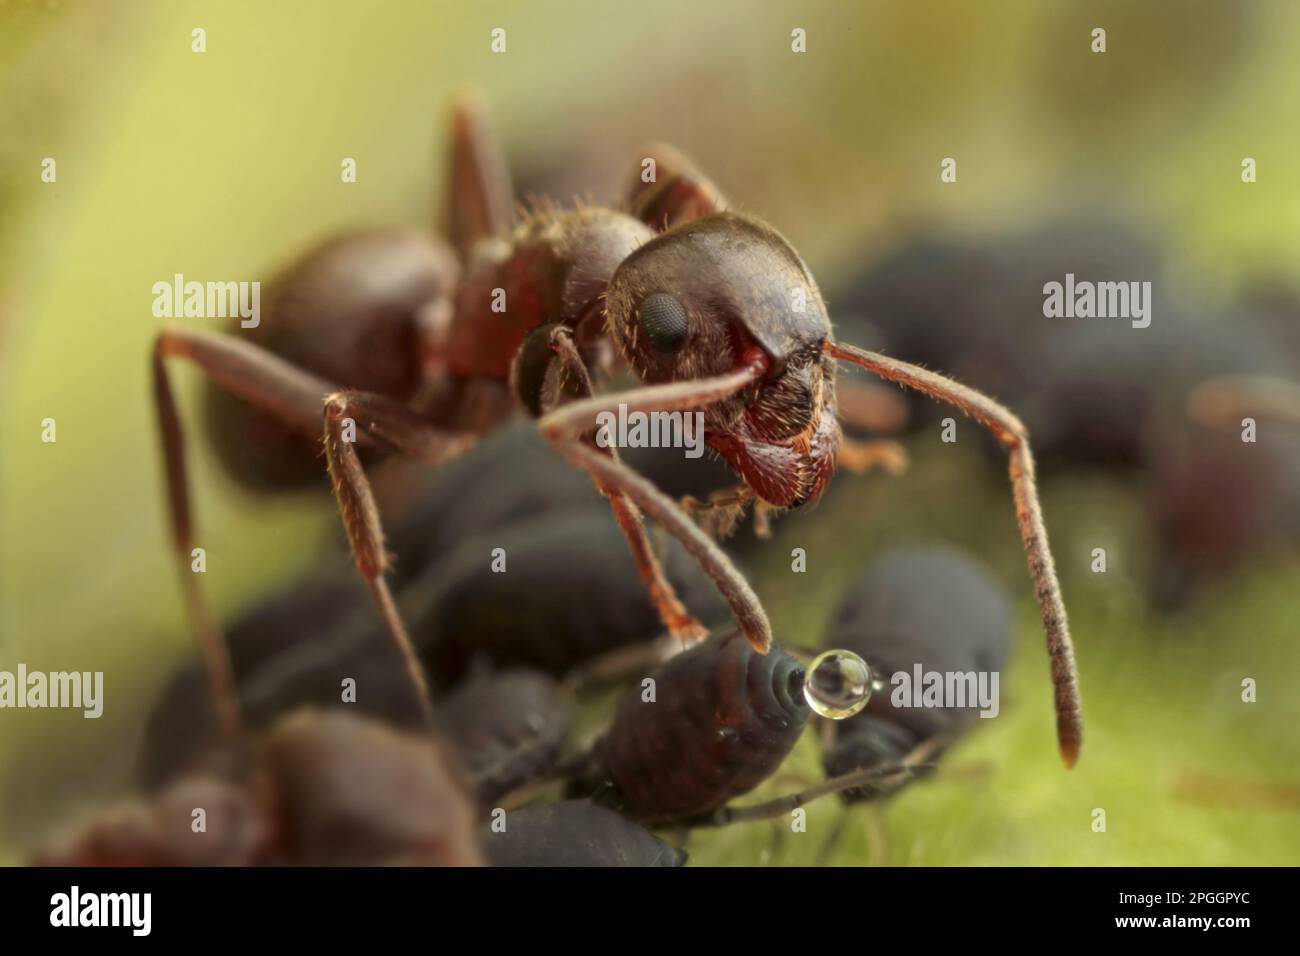 Black Garden Ant (Lasius niger) adulte, travailleur se nourrissant de miellat de puceron de Black Bean (Aphis fabae), Leicestershire, Angleterre, Royaume-Uni Banque D'Images